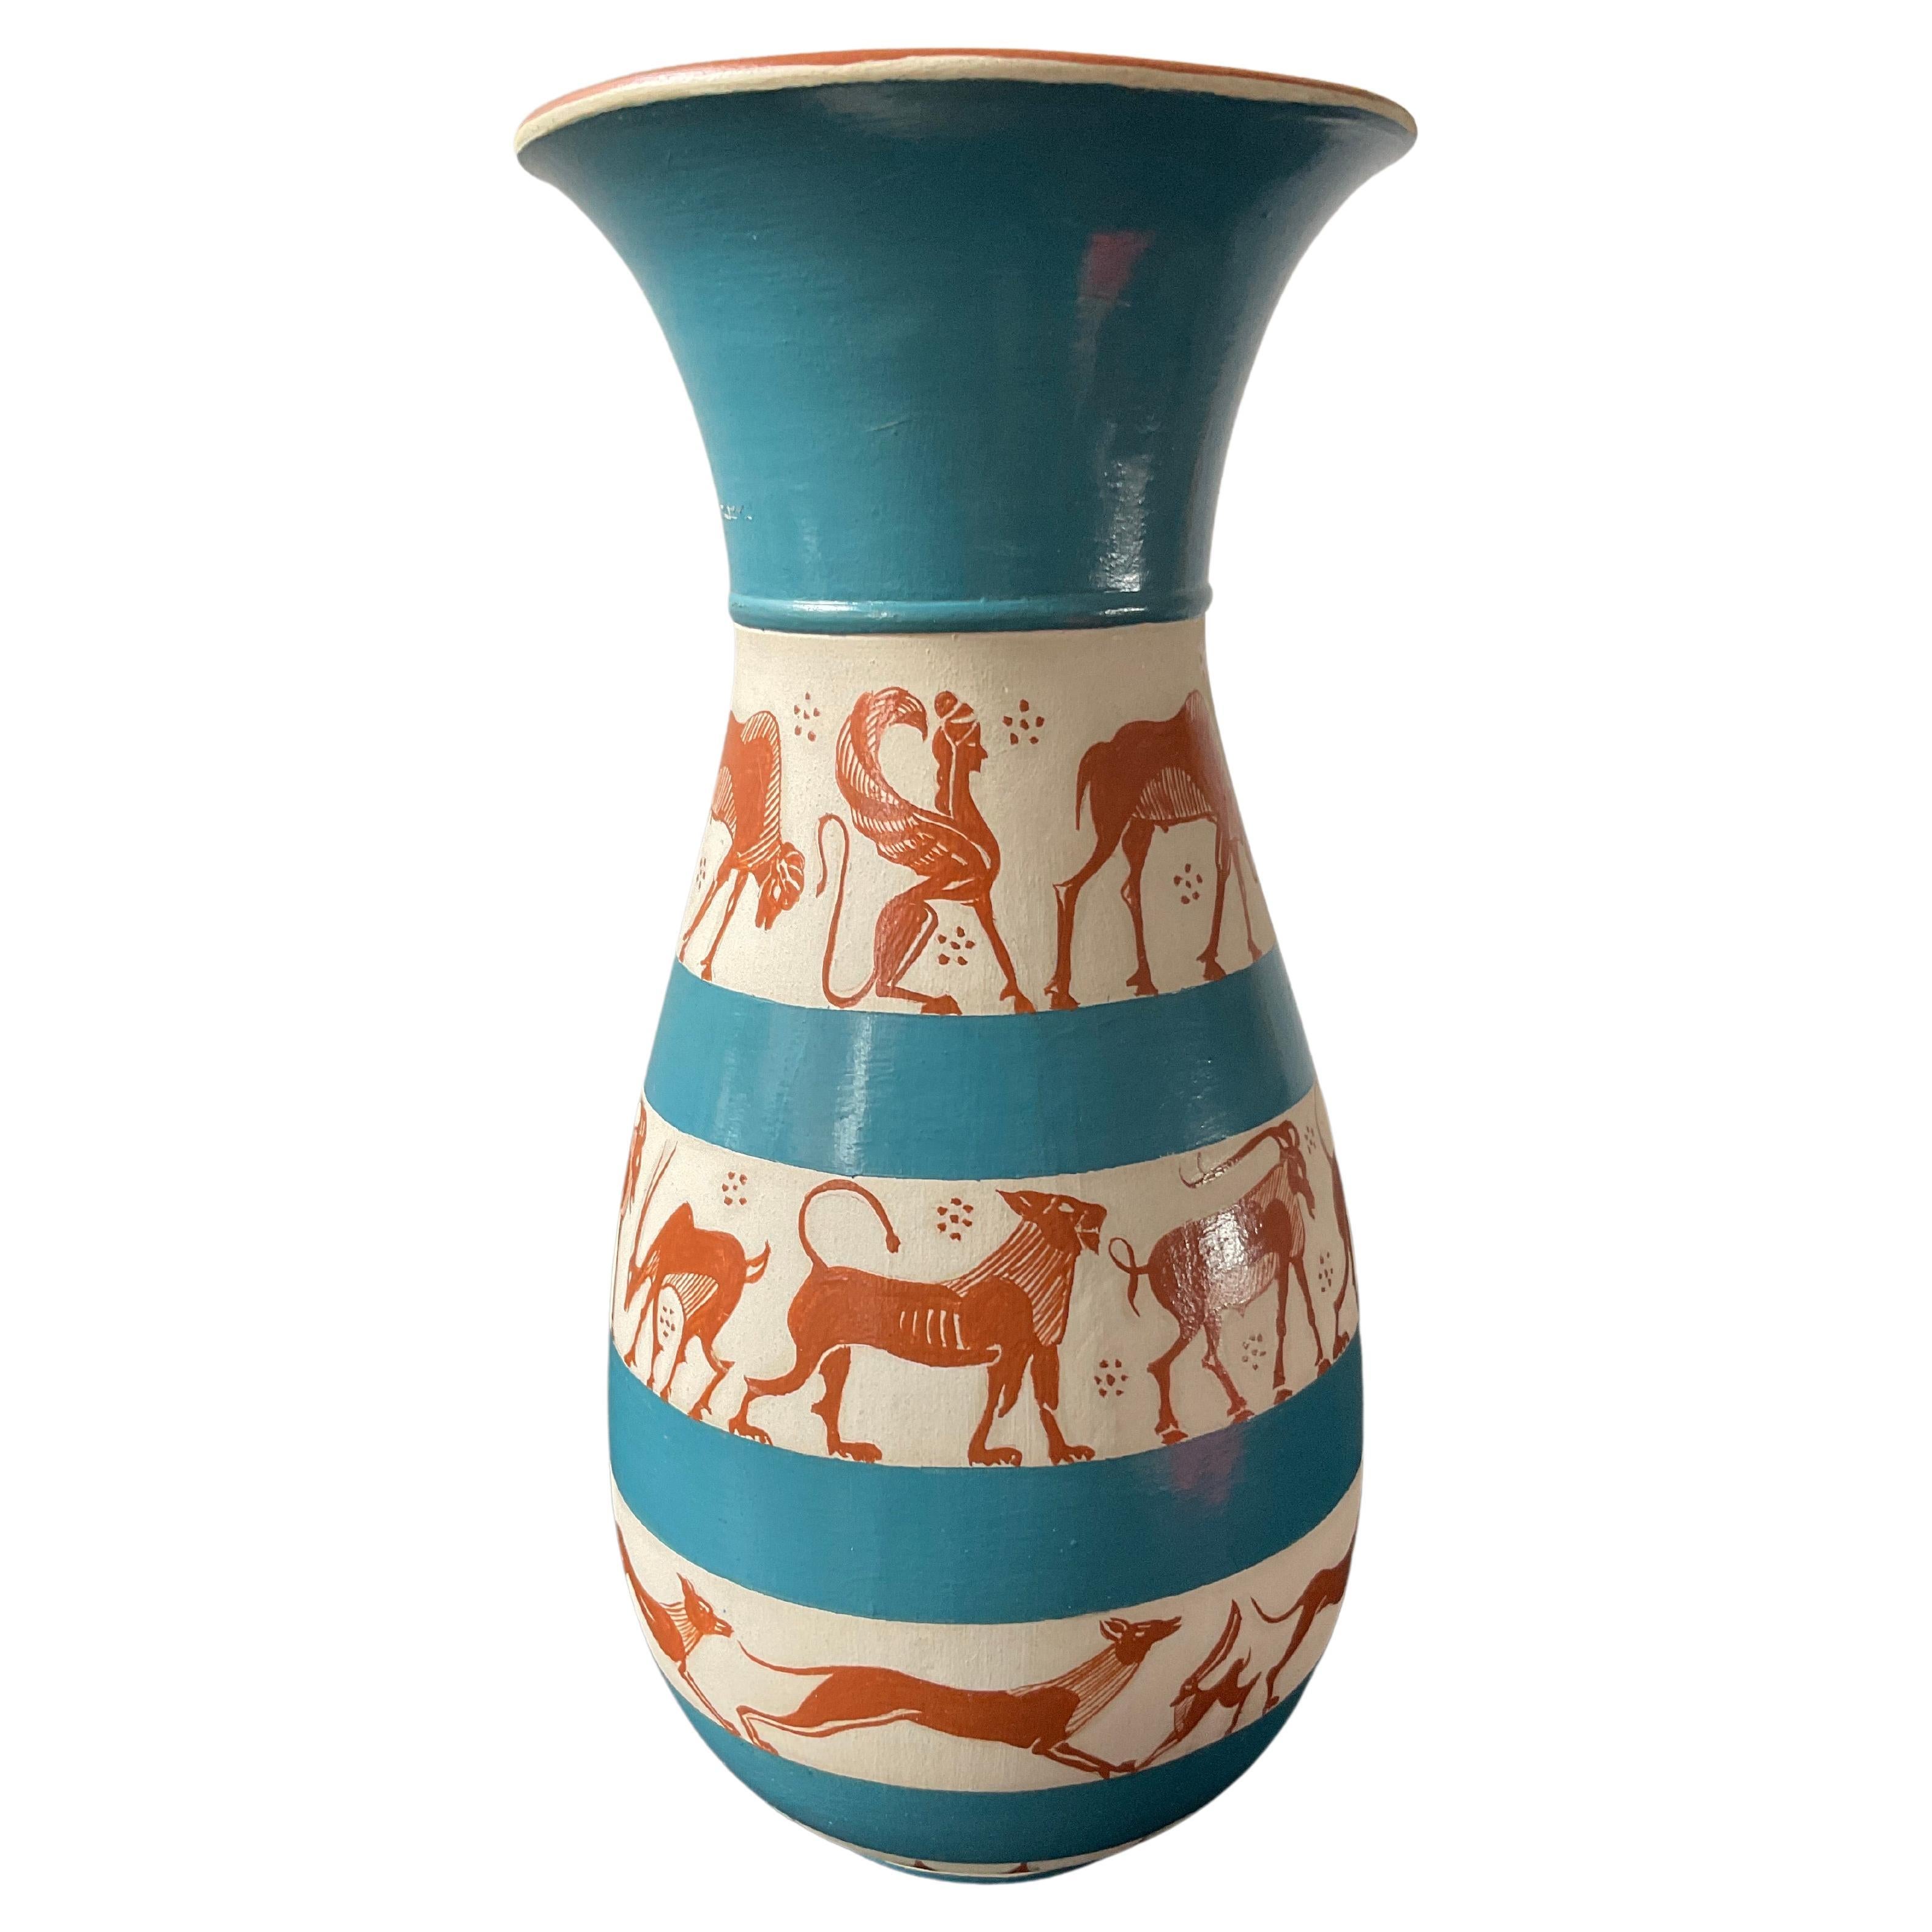 1975 Richard Arbib Ceramic Vase Decorated  with Animals For Sale